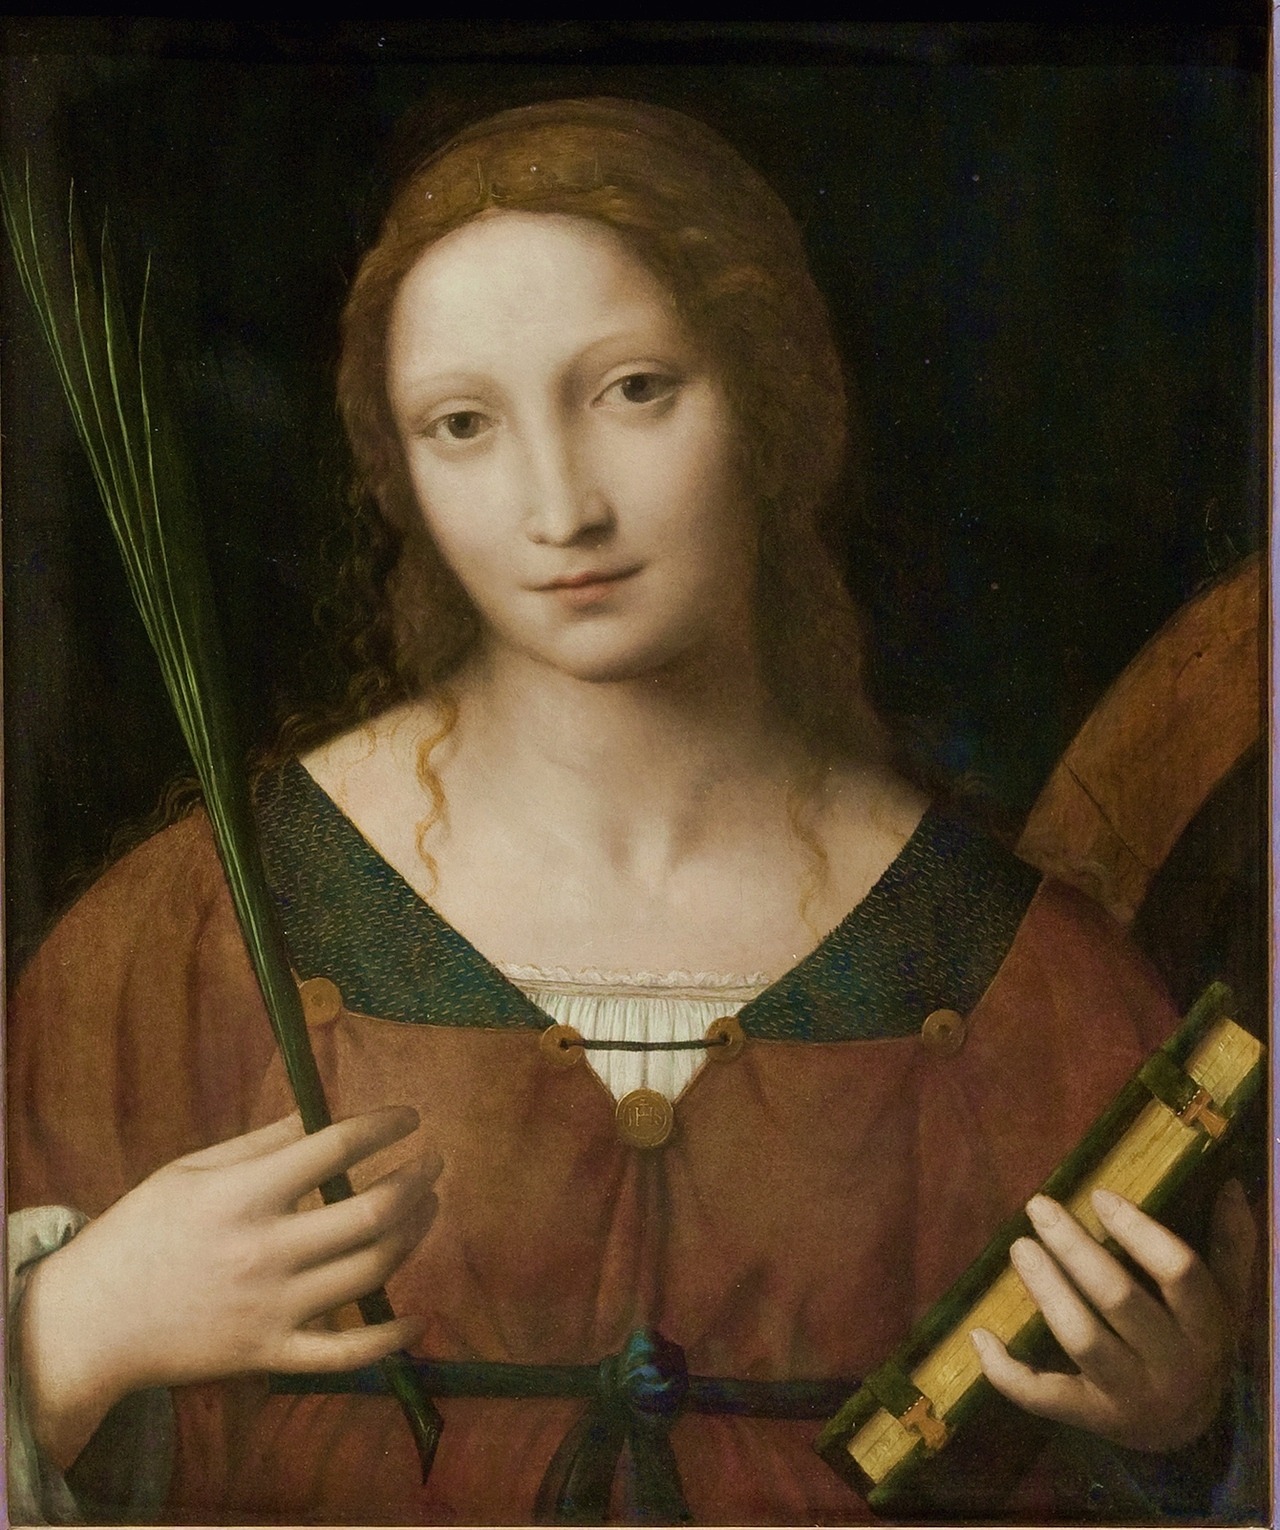 attributed to Bernardino Luini (Italian, ca. 1481-1532), previously ascribed to Leonardo